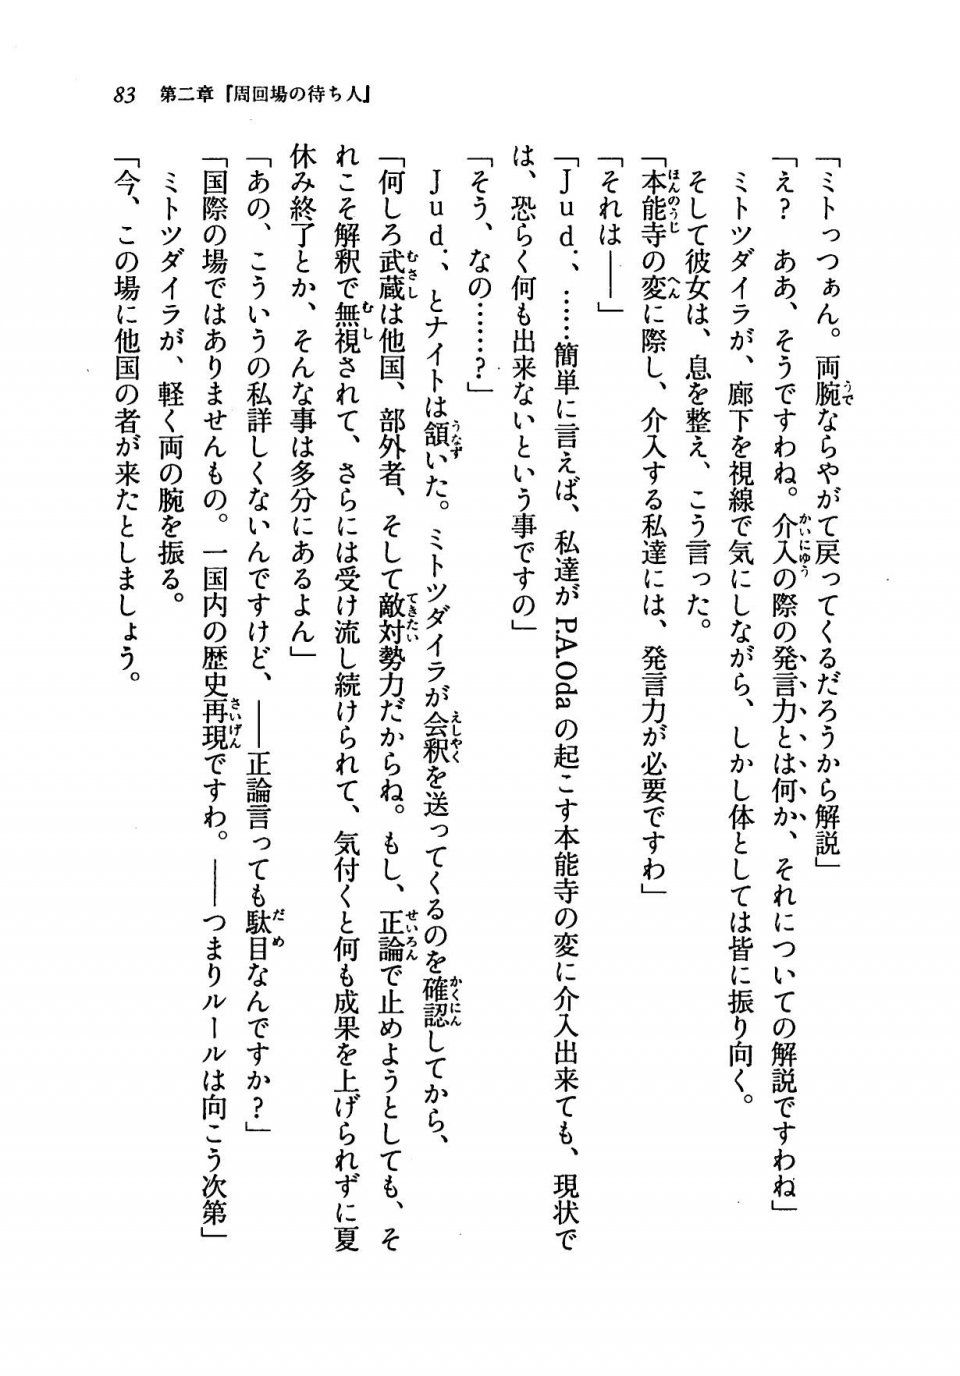 Kyoukai Senjou no Horizon LN Vol 19(8A) - Photo #83